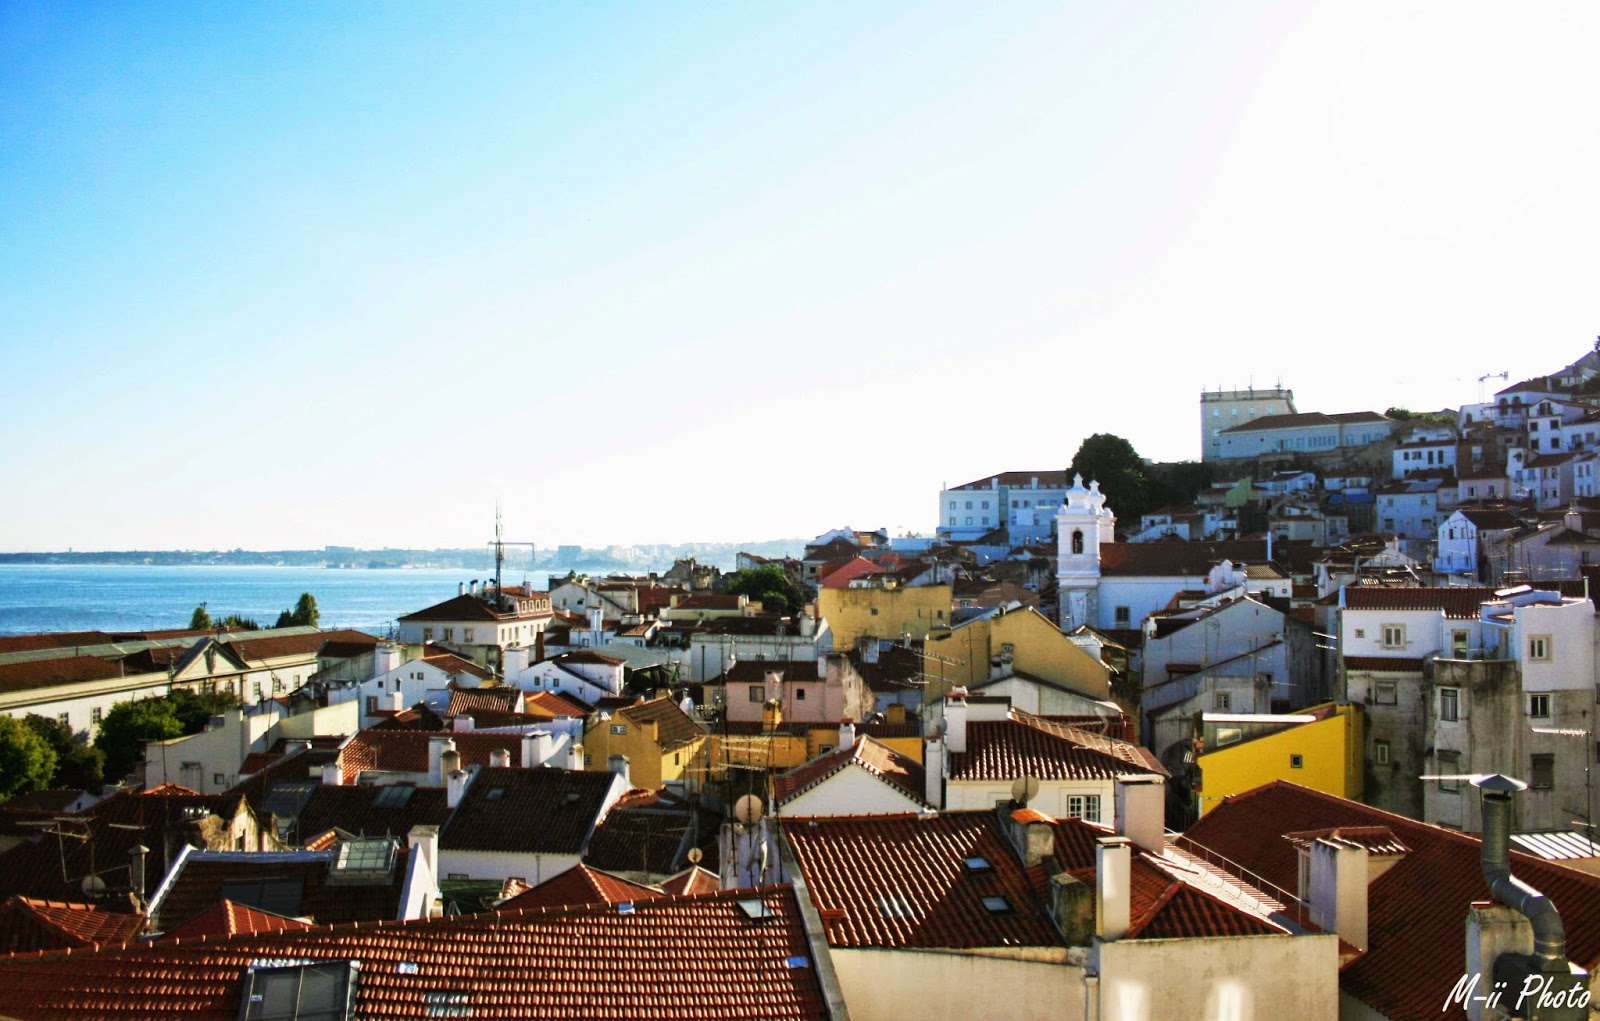 M-ii Photo : 10 choses à faire à Lisbonne 